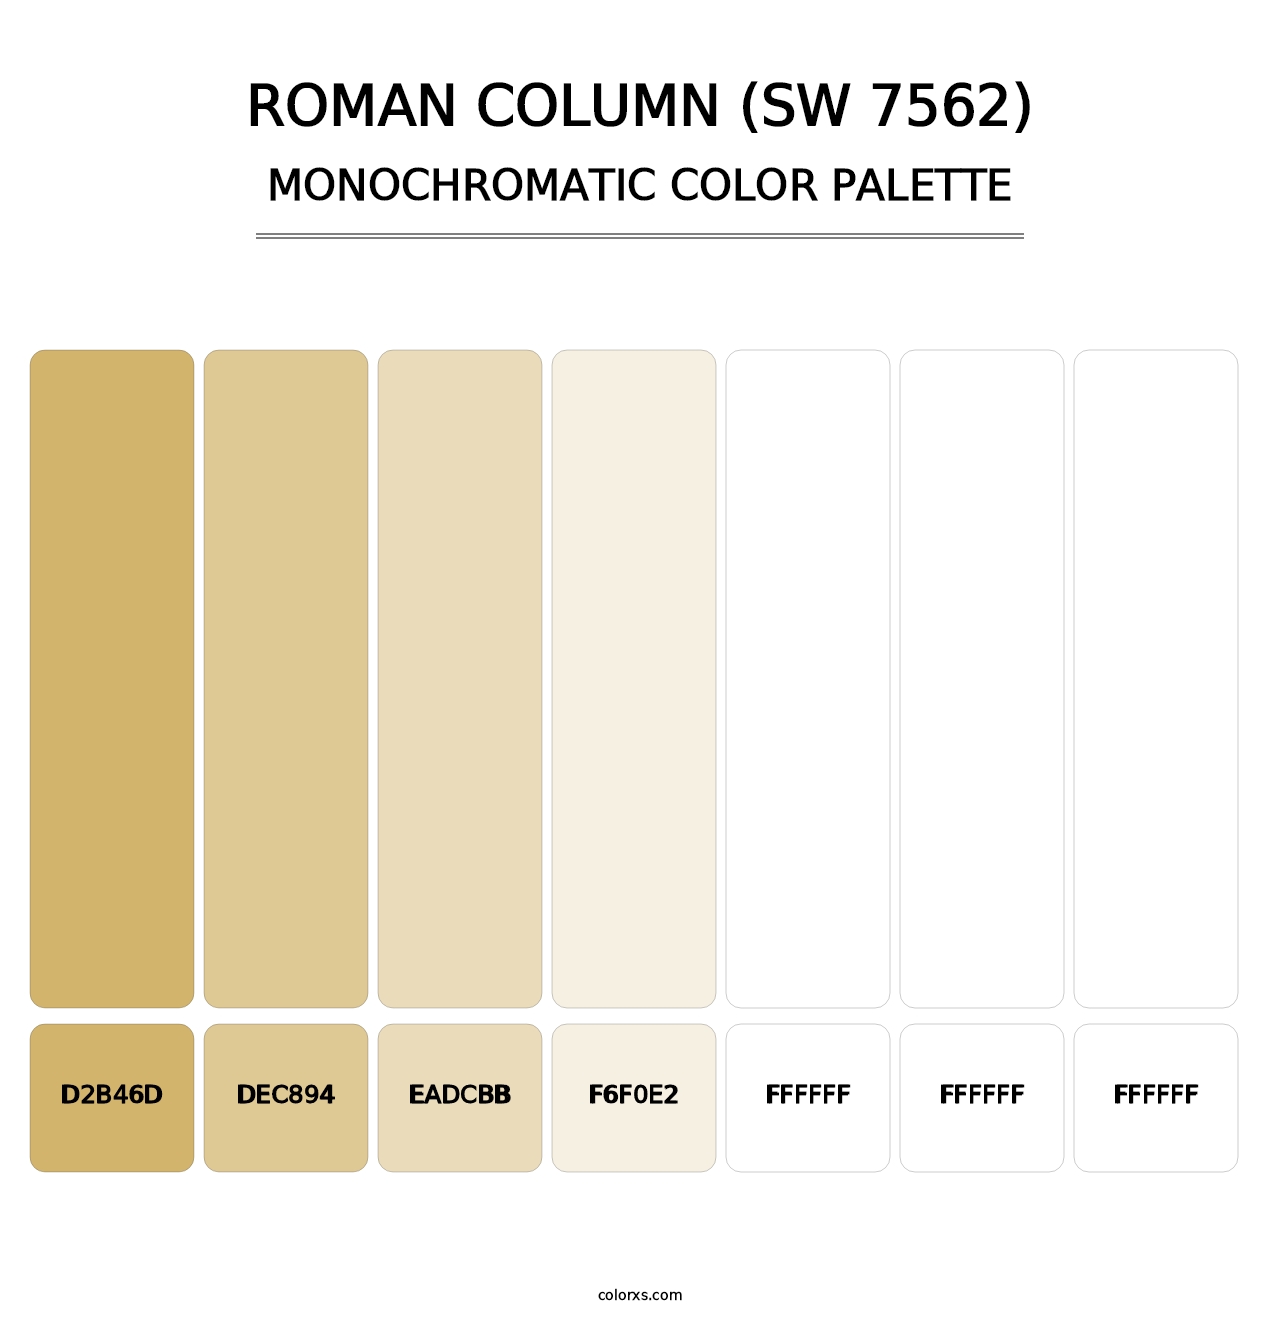 Roman Column (SW 7562) - Monochromatic Color Palette